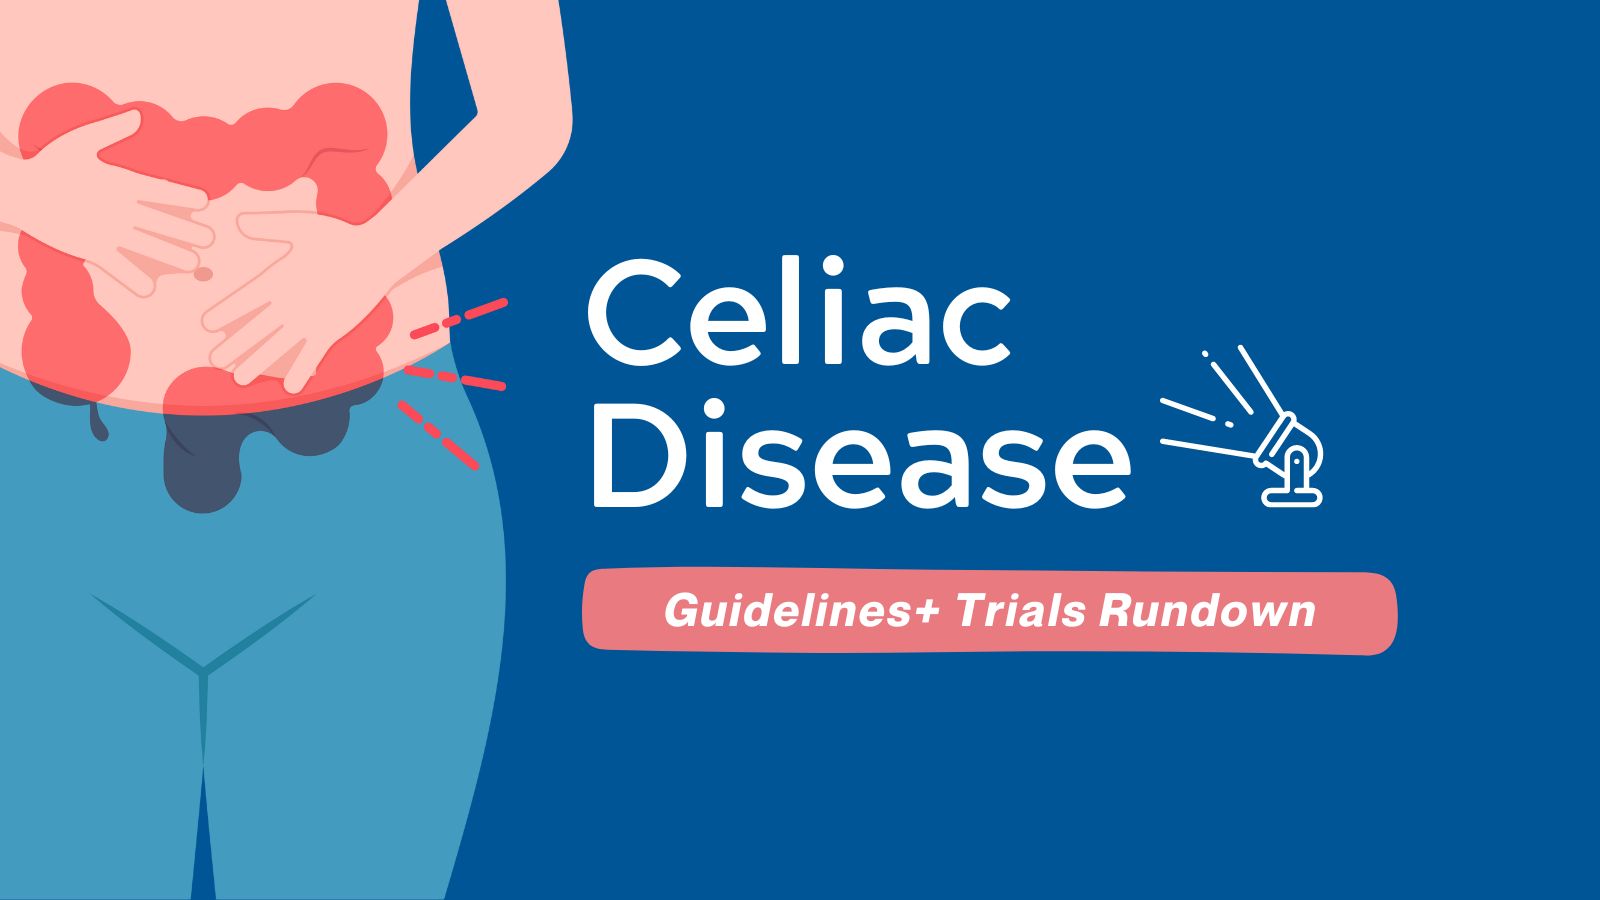 Guidelines+ Trials Rundown - Celiac Disease